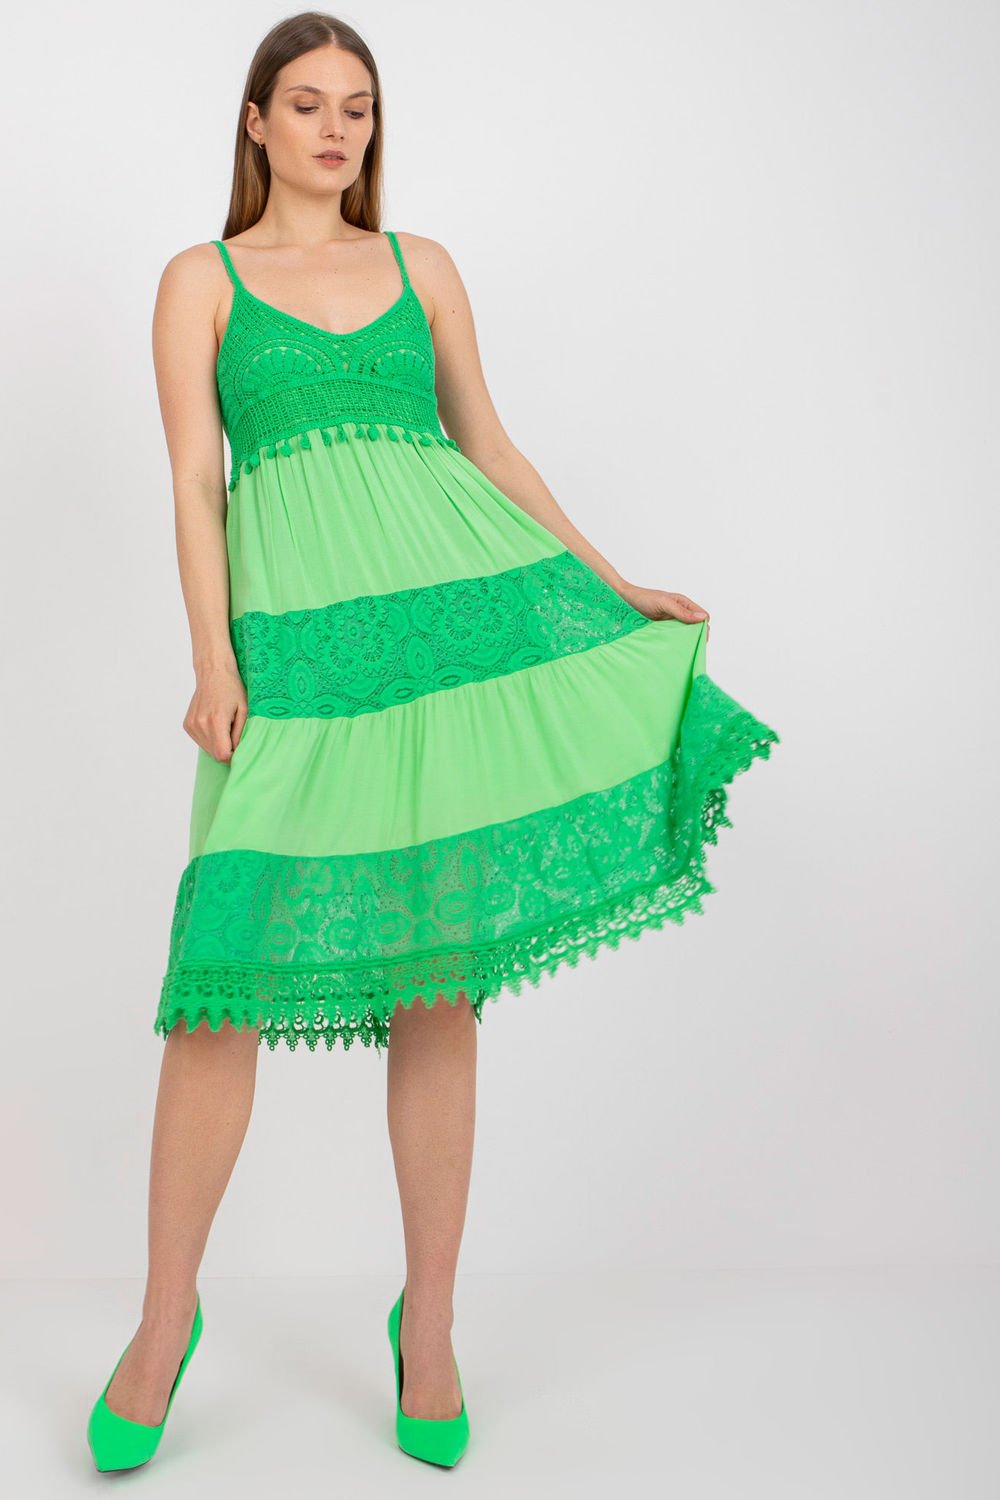 Green Summer Dress Openwork